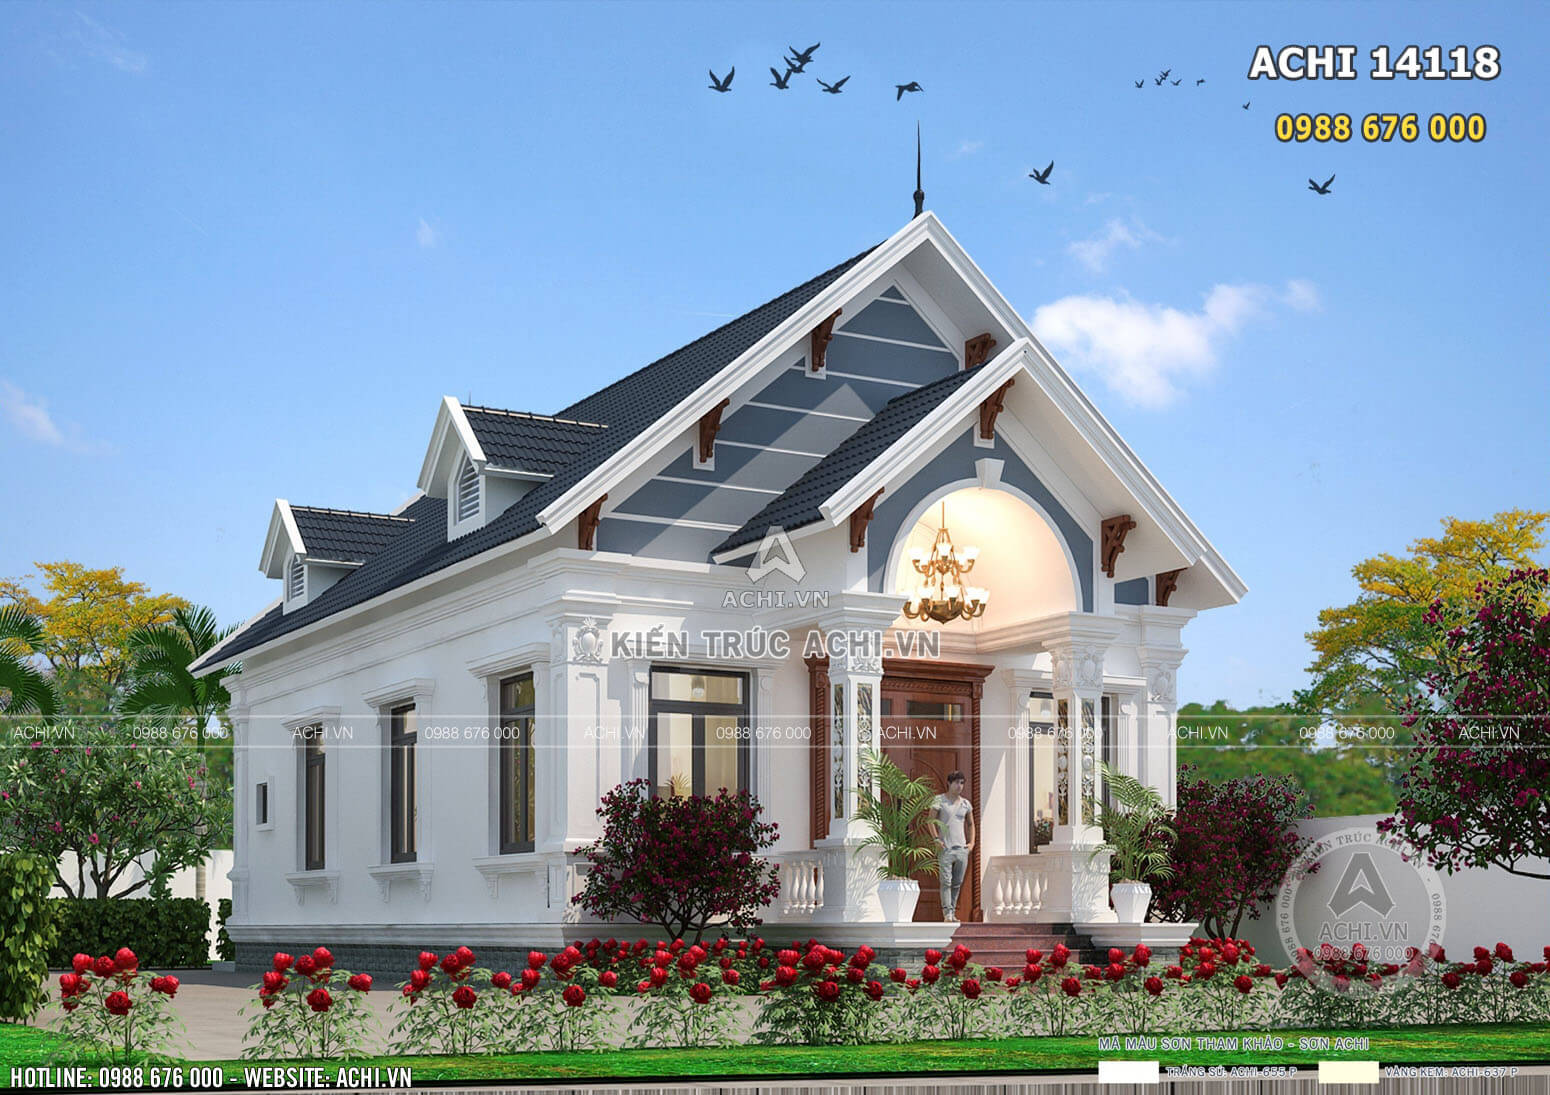 Bản vẽ nhà mái thái cấp 4 đẹp kiến trúc hiện đại 100m2 tại Quảng Ngãi - Mã số: ACHI 14118